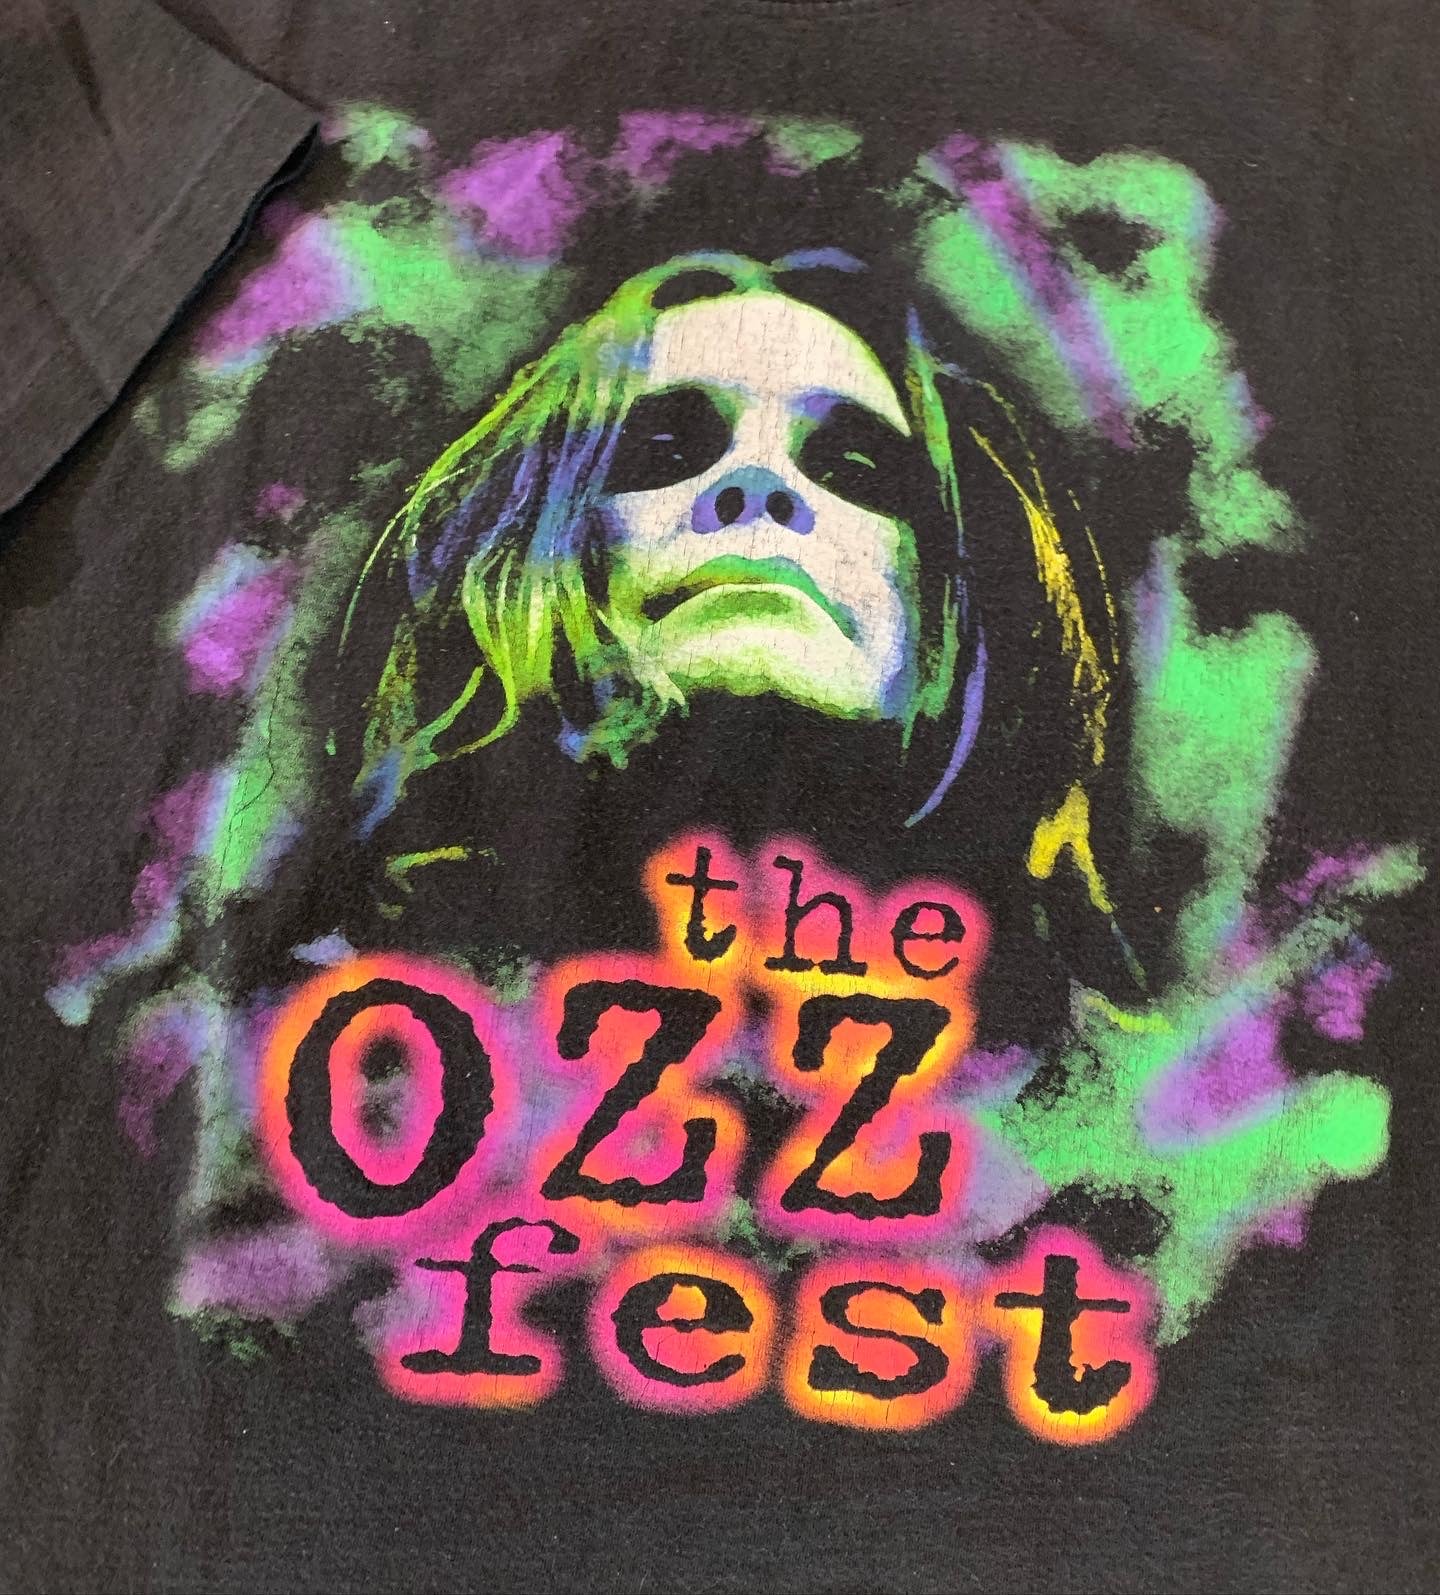 The ozz fest